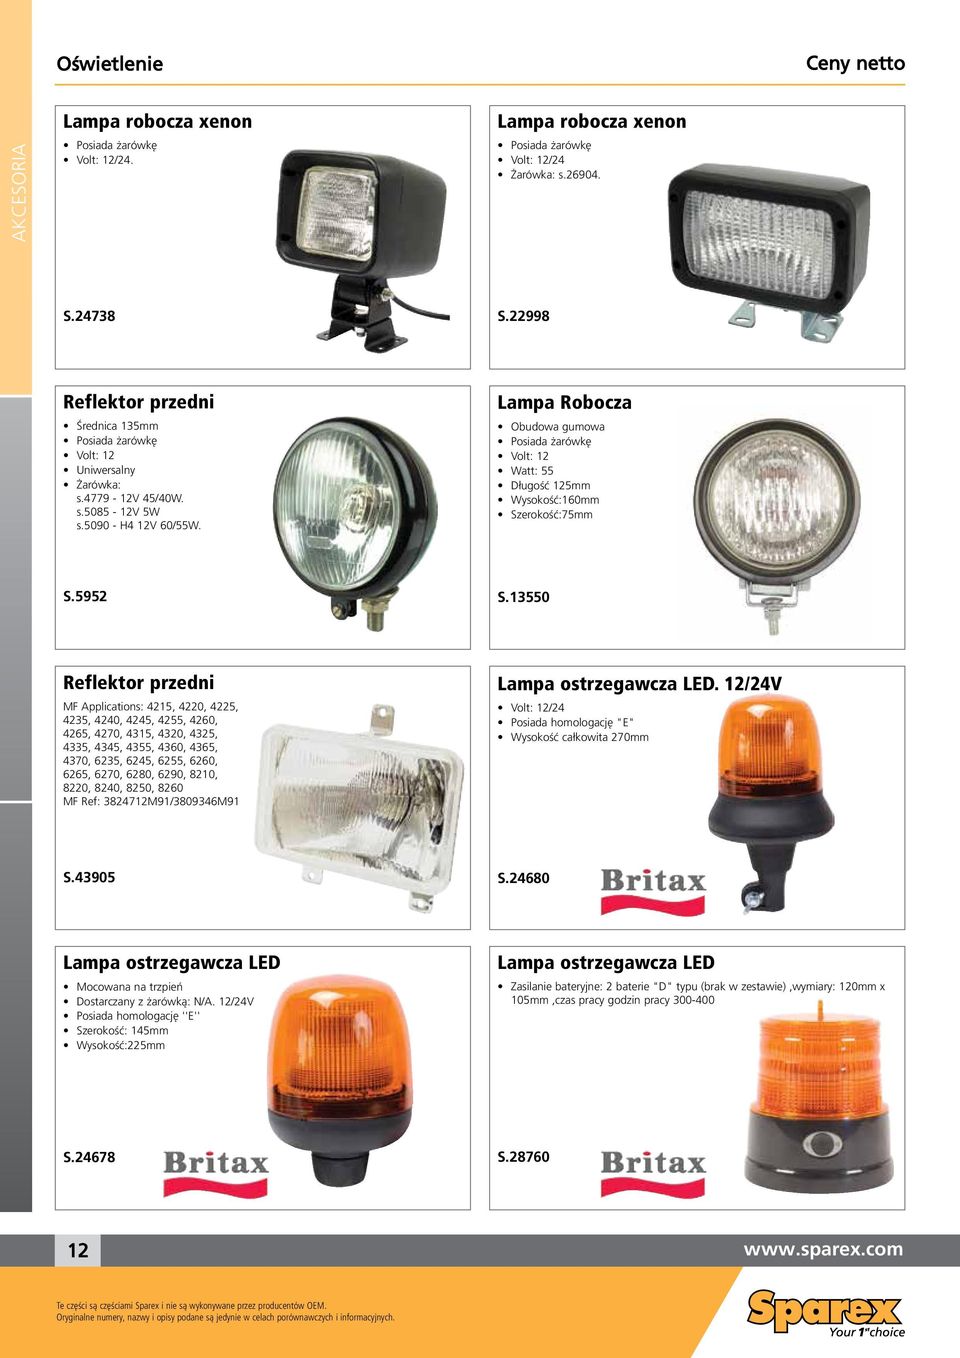 Lampa Robocza obudowa gumowa Posiada żarówkę Volt: 12 Watt: 55 Długość 125mm Wysokość:160mm Szerokość:75mm S.5952 S.